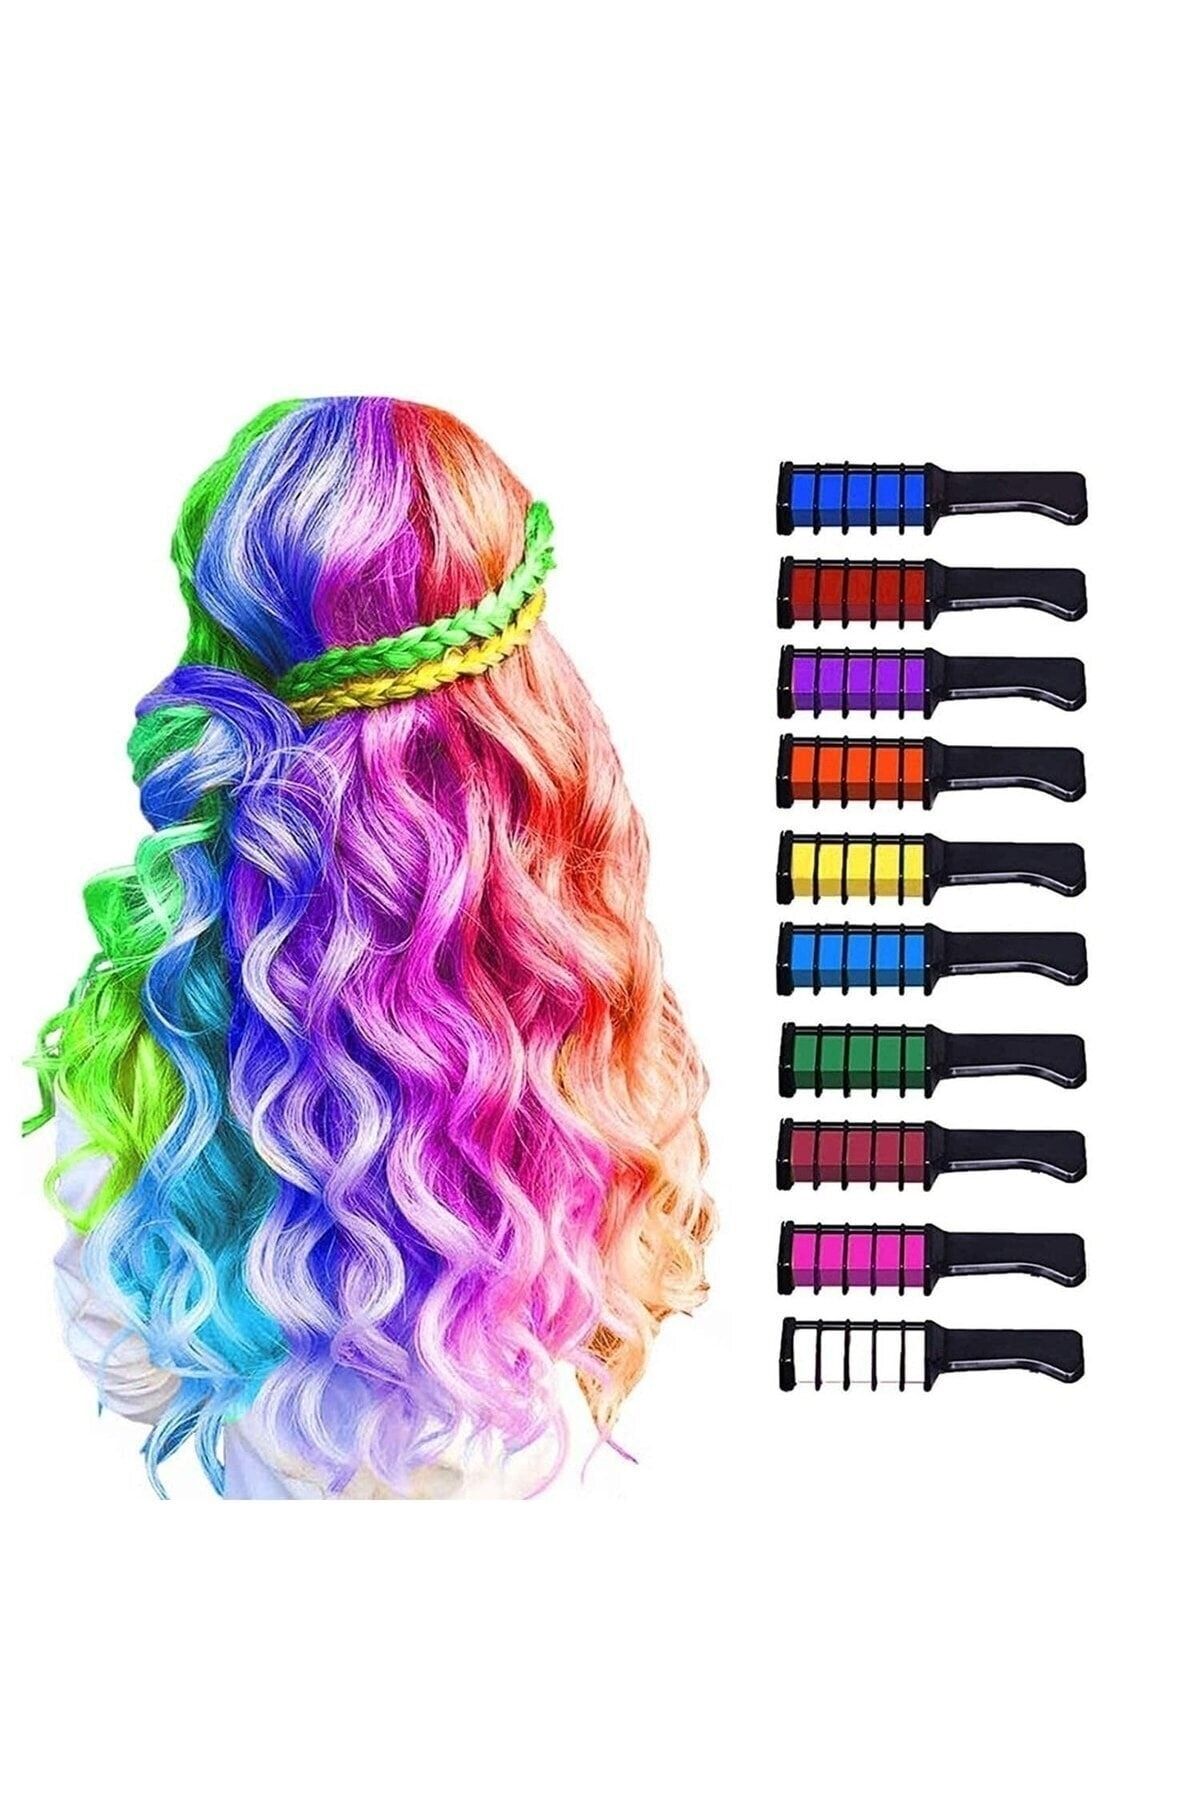 Deco Elit Saç Tebeşiri Taraklı 10 Lu Renkli Saç Boyası Tebeşiri Geçici Saç Tebeşir Seti Hair Chalk